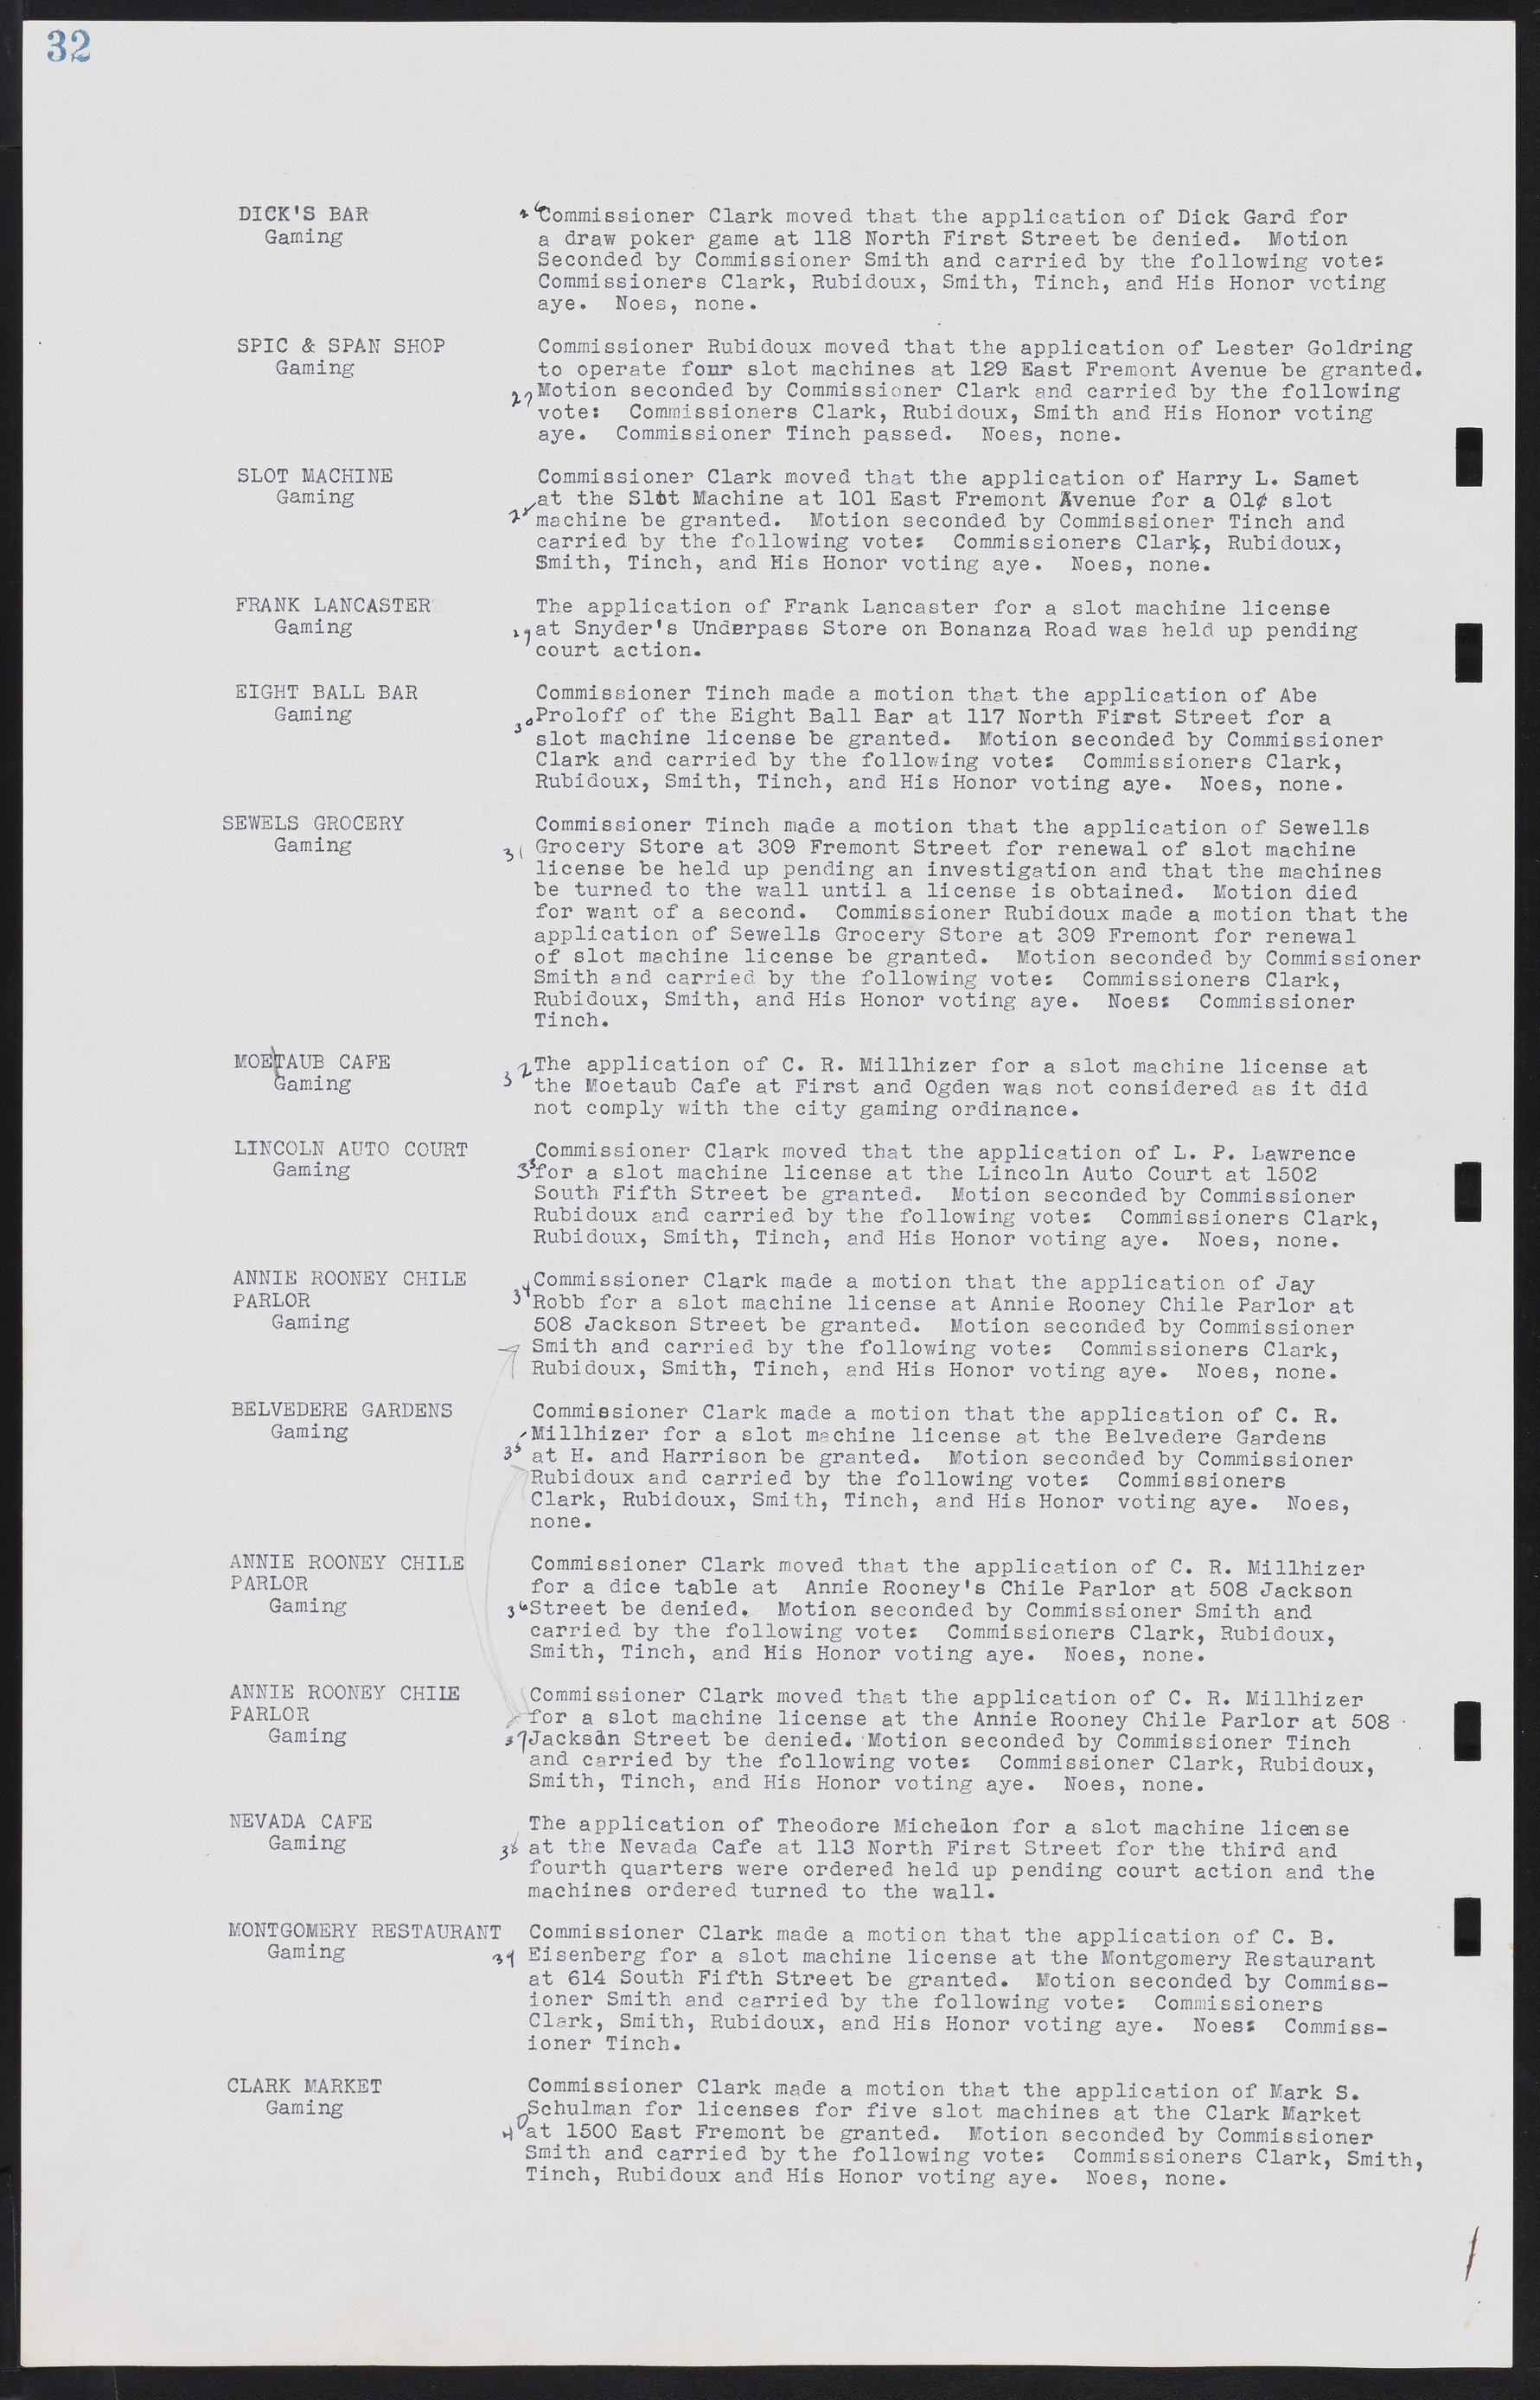 Las Vegas City Commission Minutes, August 11, 1942 to December 30, 1946, lvc000005-41